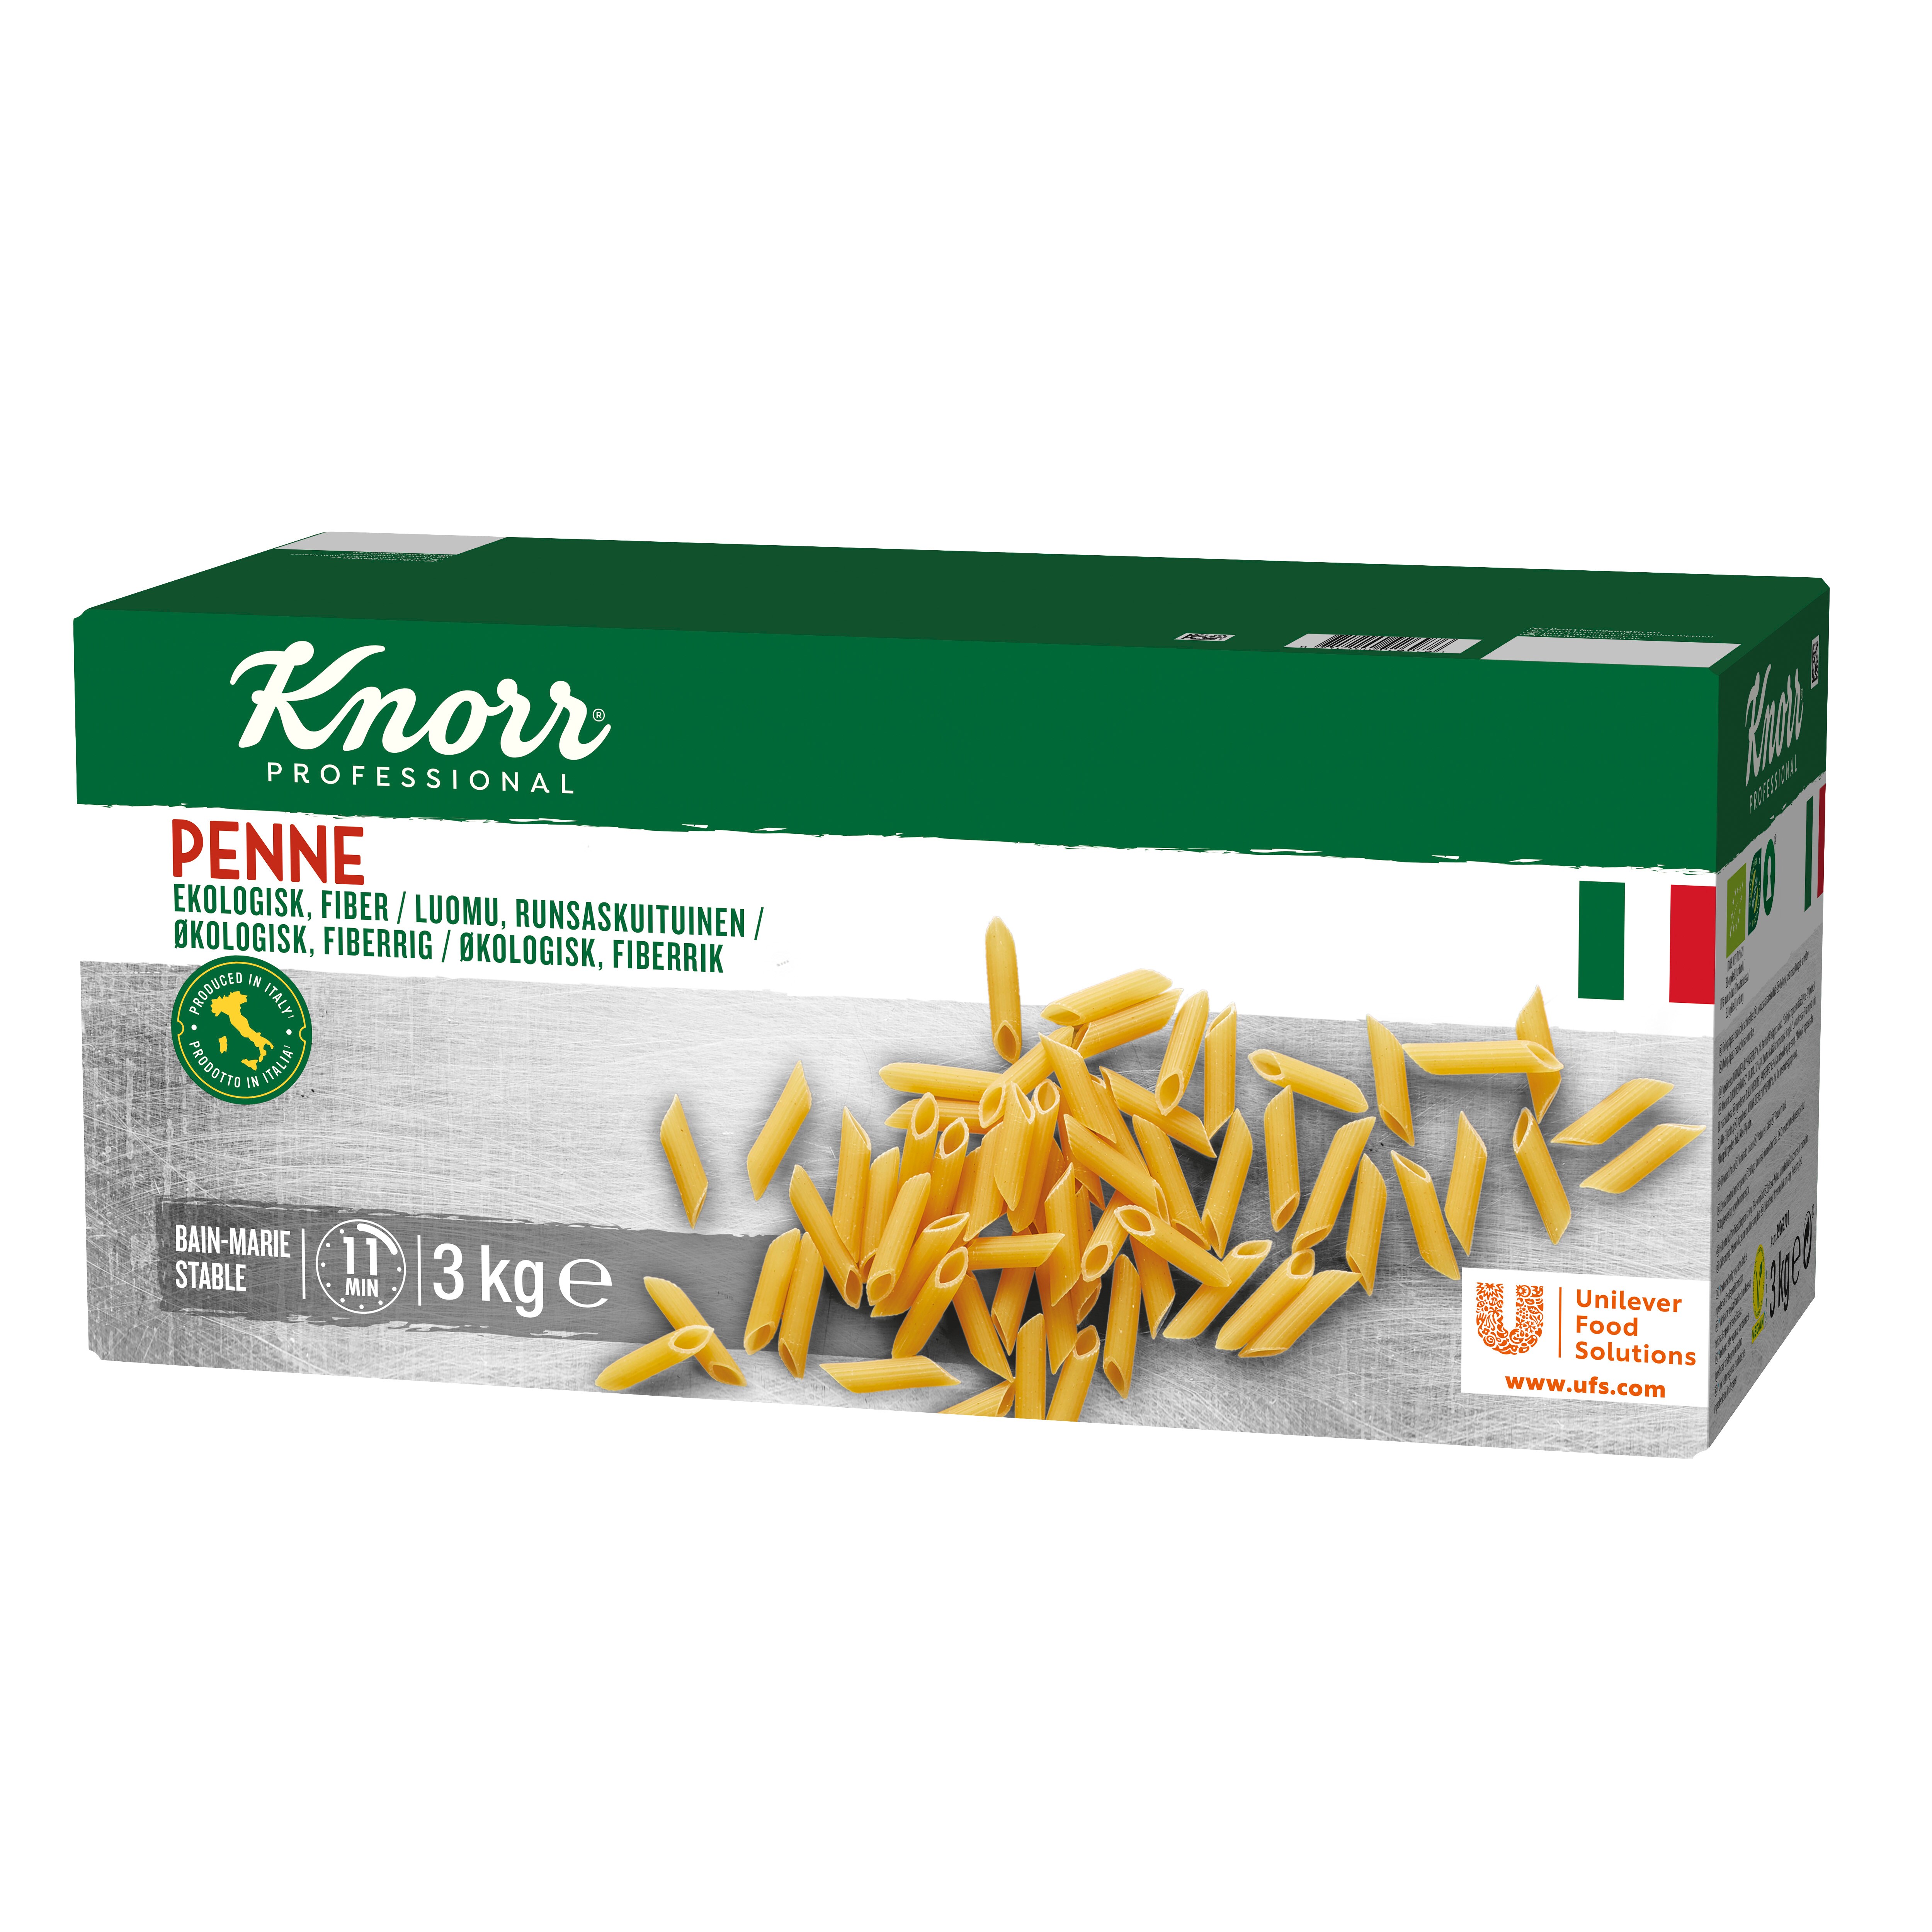 Knorr Penne, Økologisk pasta med økologiske havrefibre 3 kg - 